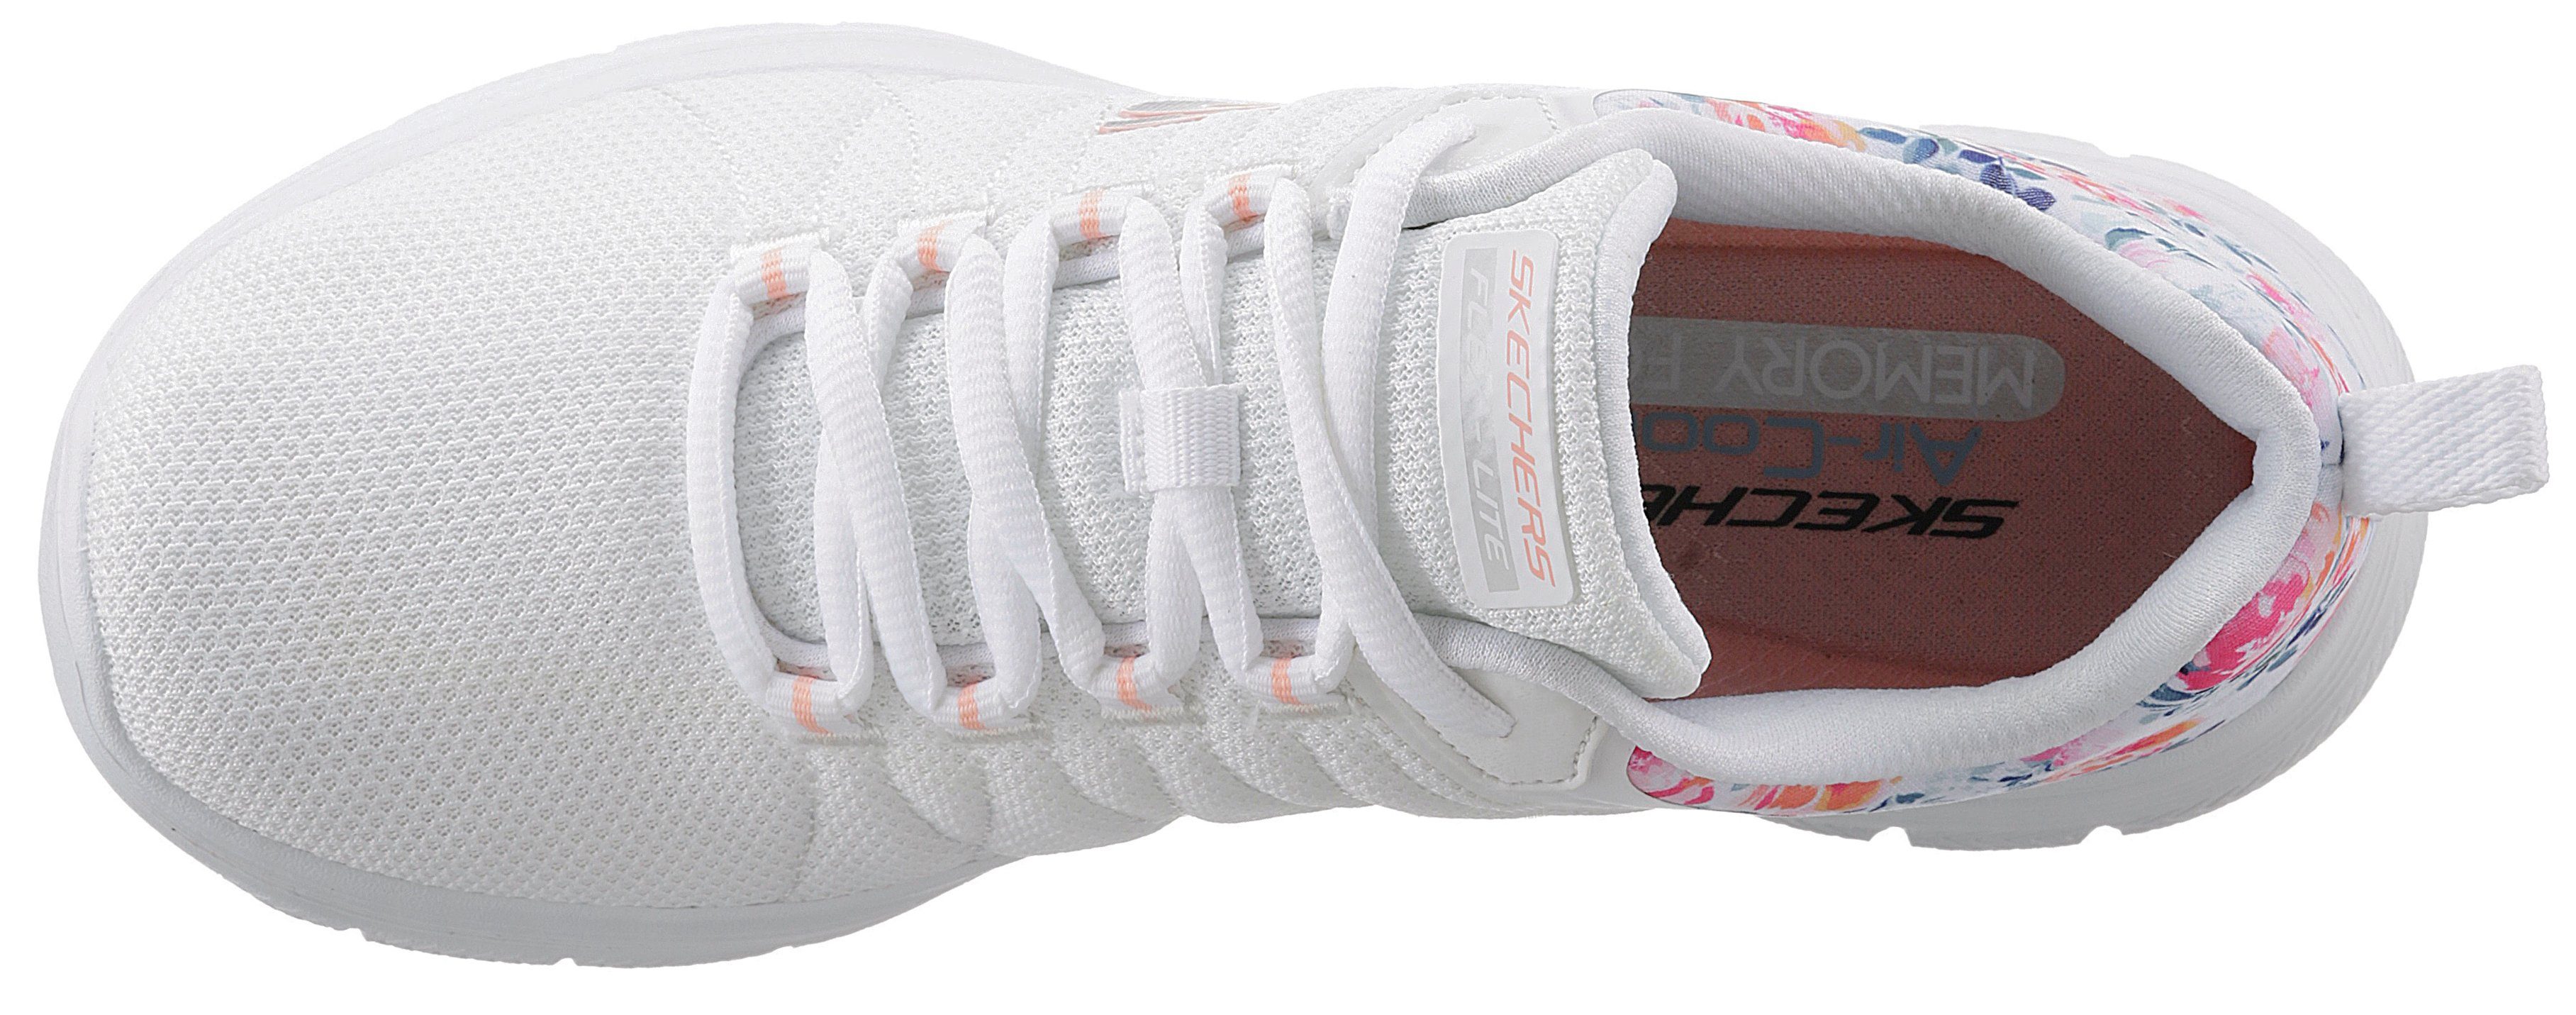 IT an Blumenprint FLEX mit Sneaker weiß-kombiniert APPEAL Skechers BLOSSOM Ferse 4.0 LET der